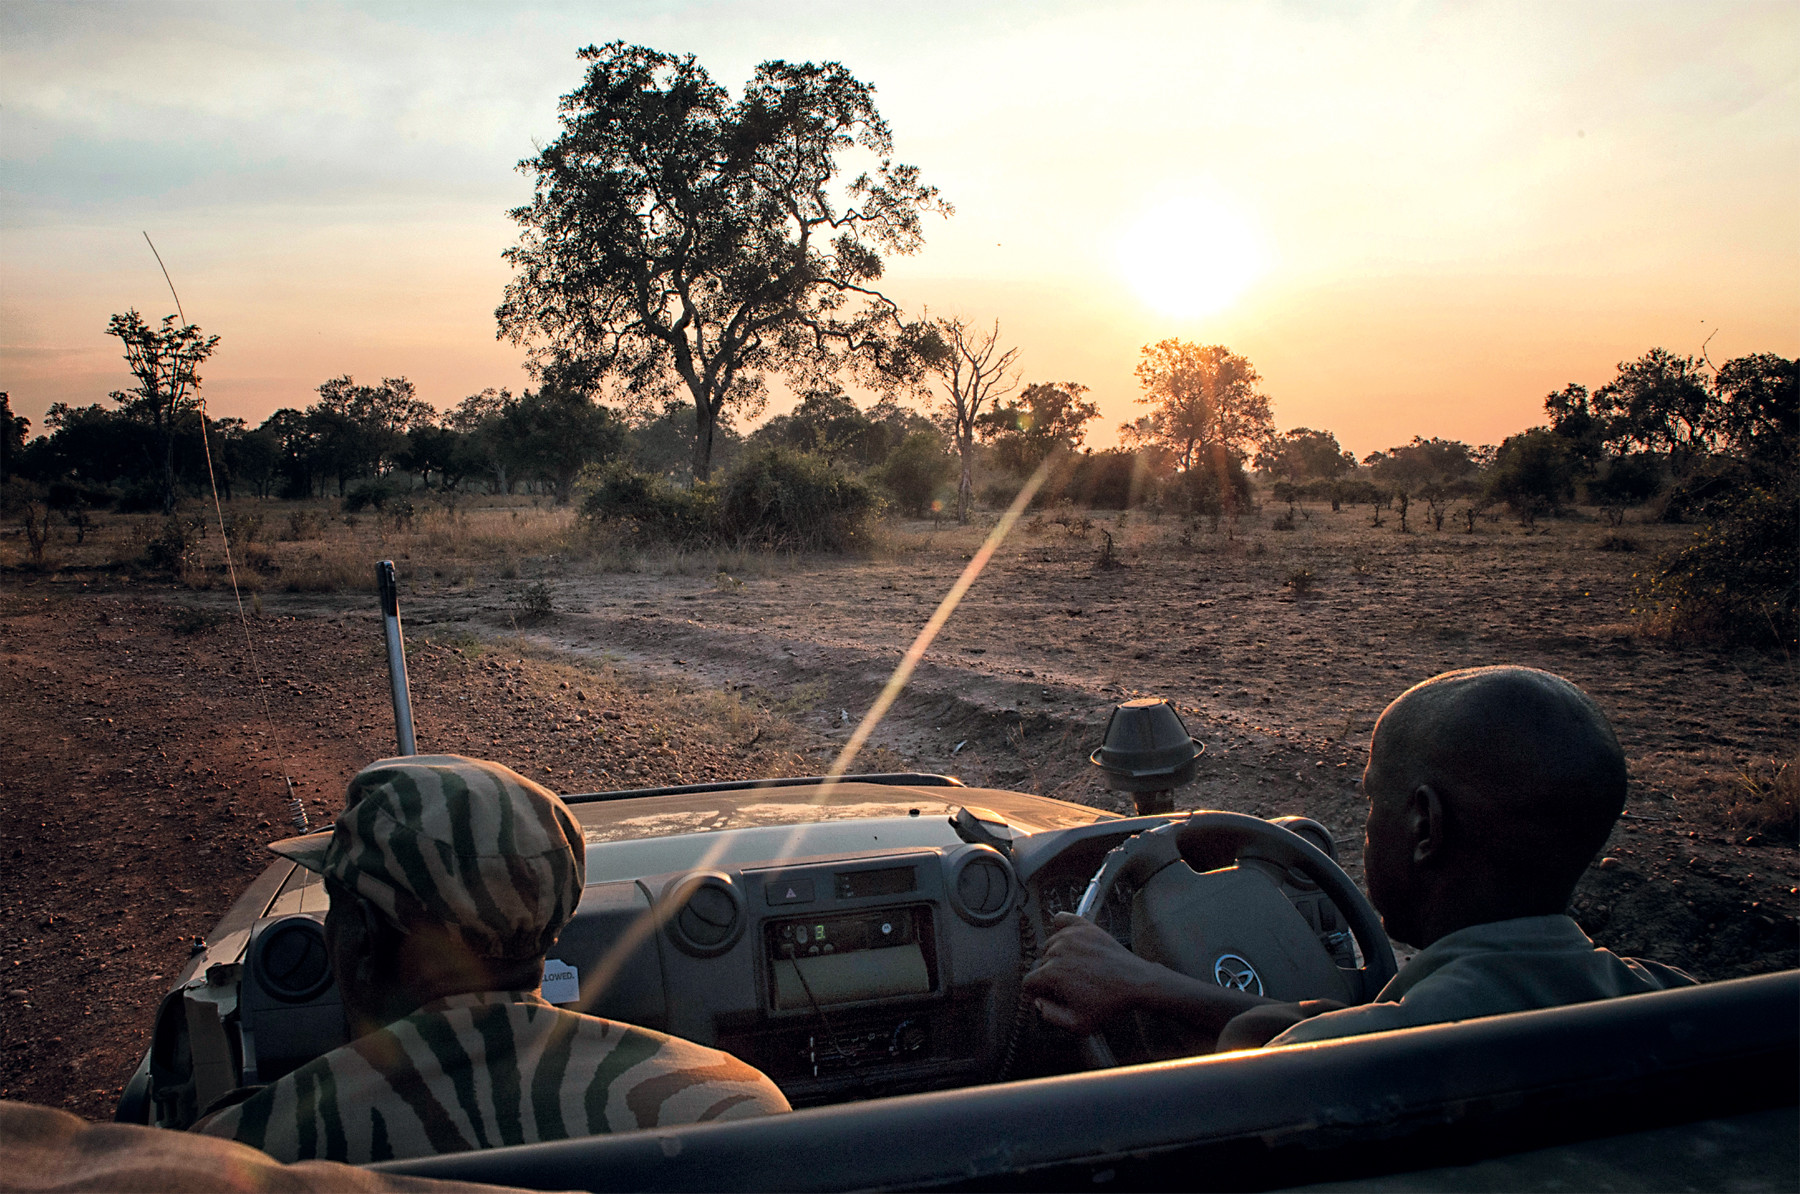 Op safarit in nationaal park South Luangwa in Zambia. Foto: Michael Dehaspe